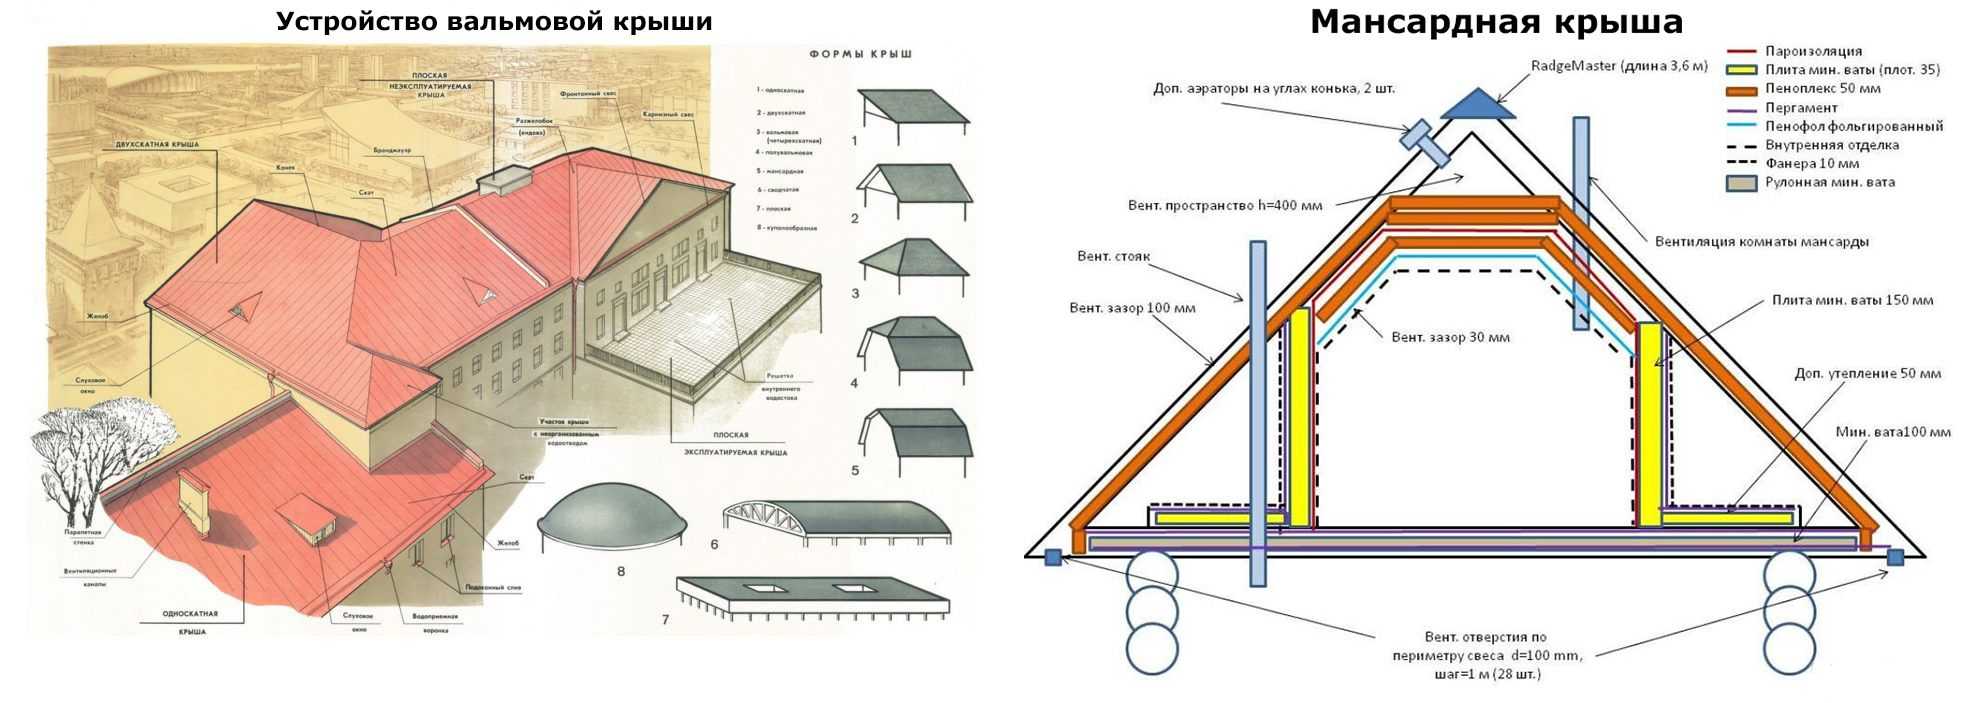 Двухскатная крыша с мансардой: устройство, монтаж